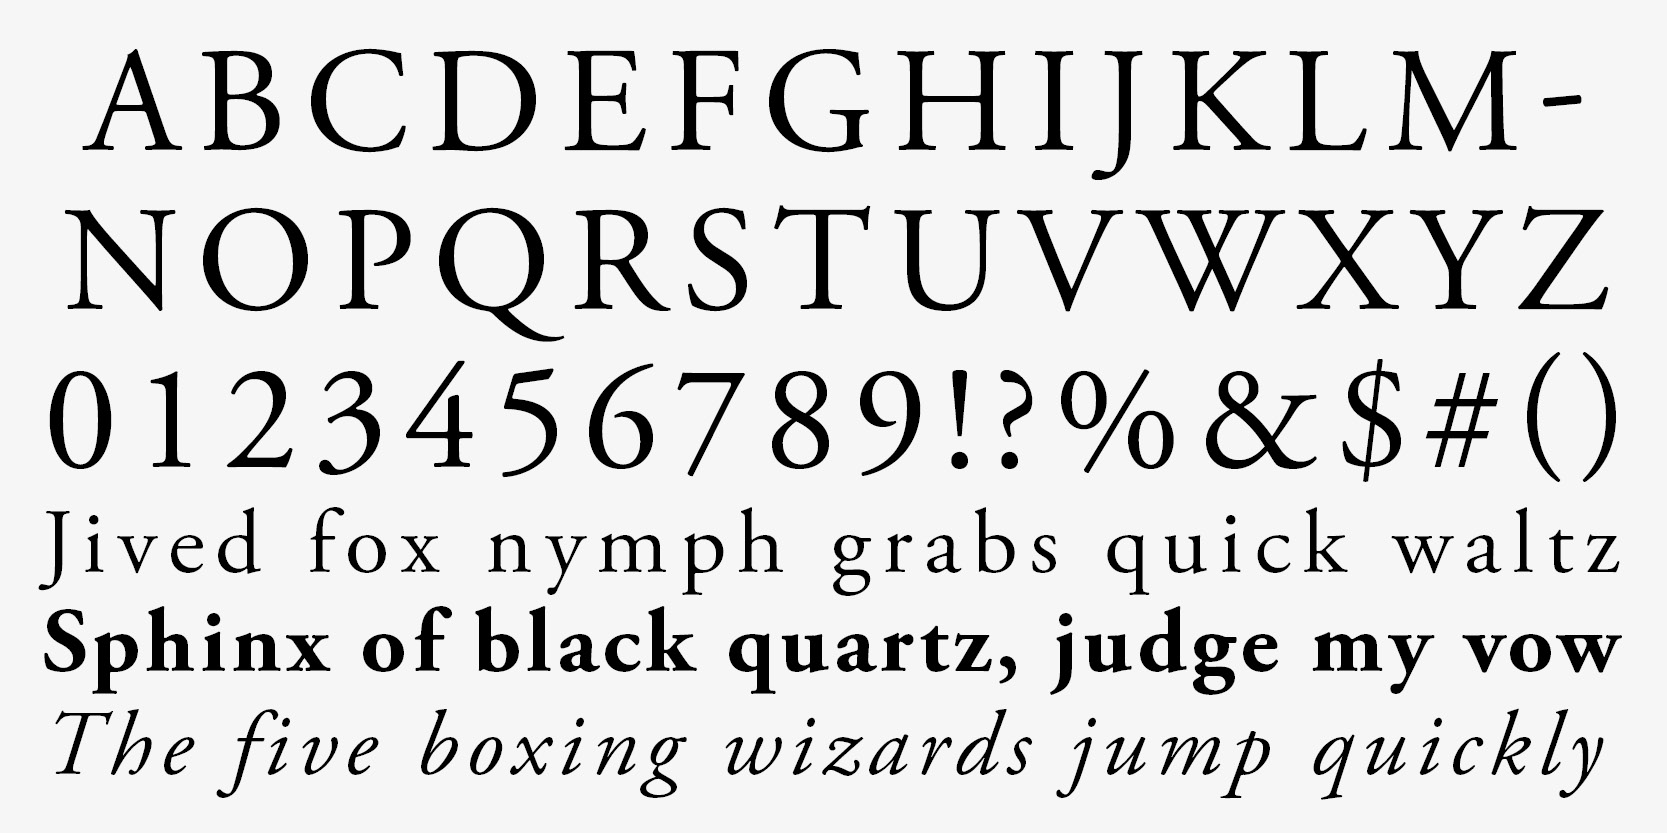 Card displaying Adobe Garamond typeface in various styles